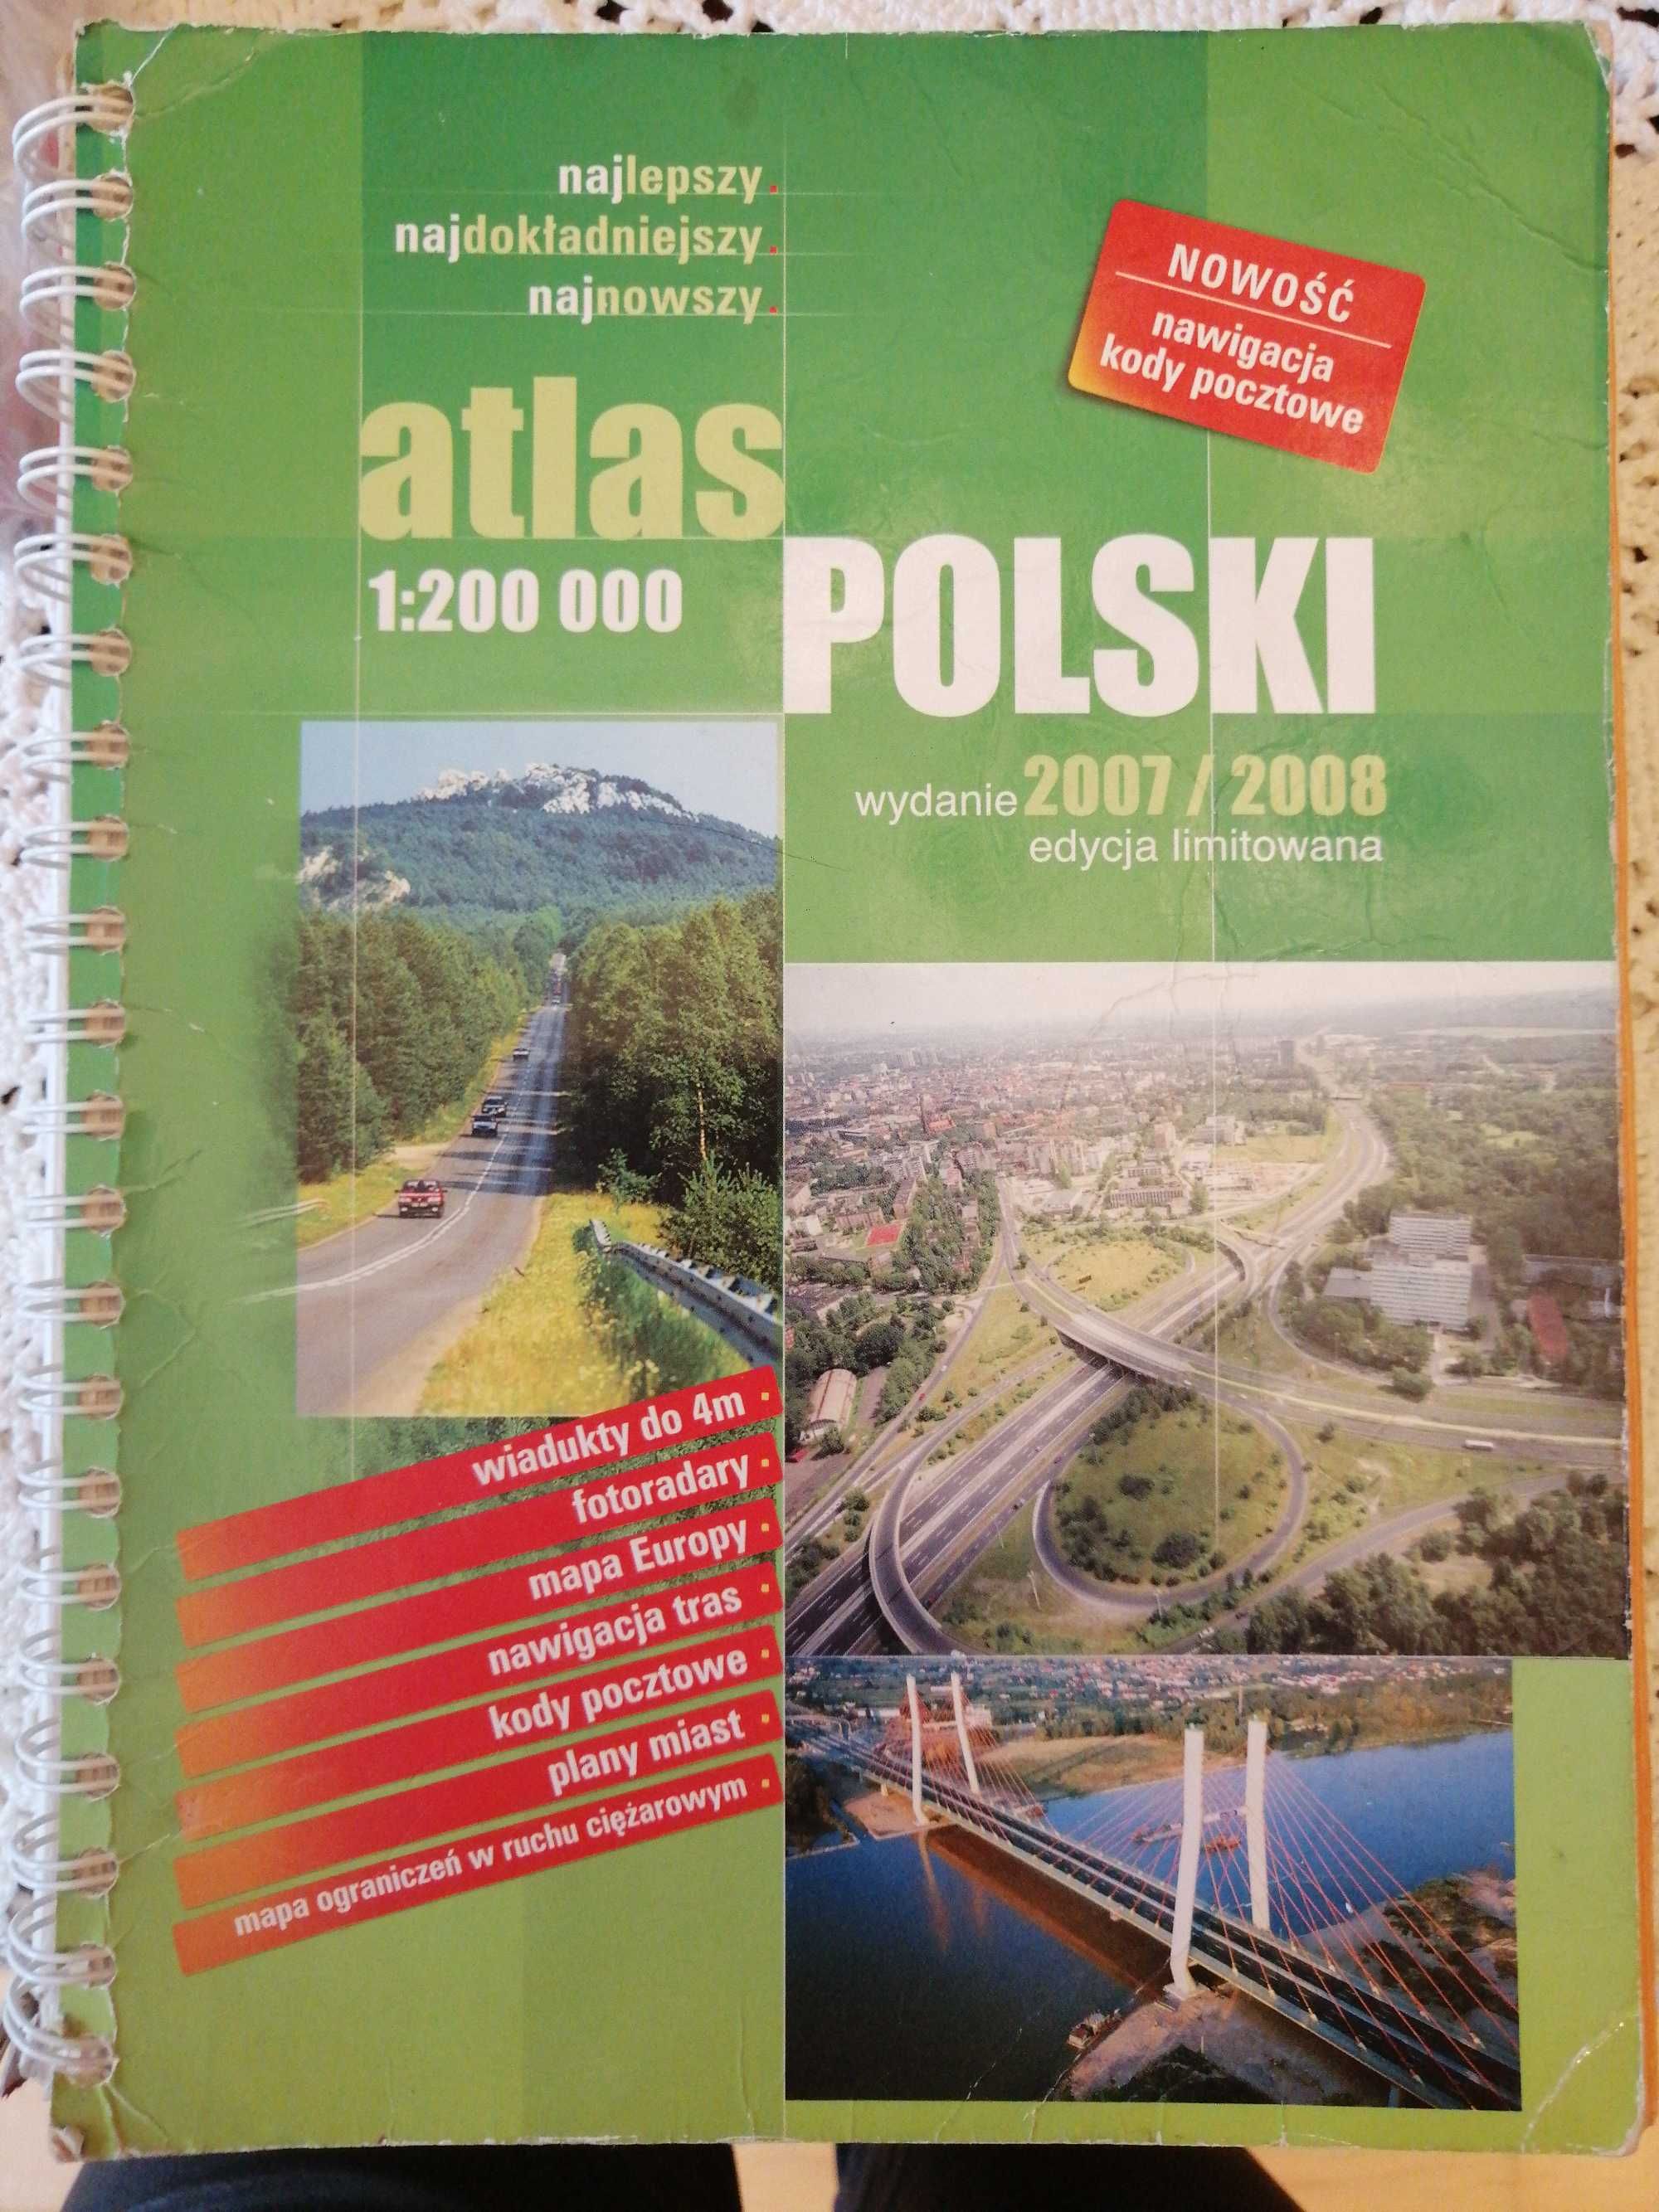 Atlas polski wydanie 2007/2008